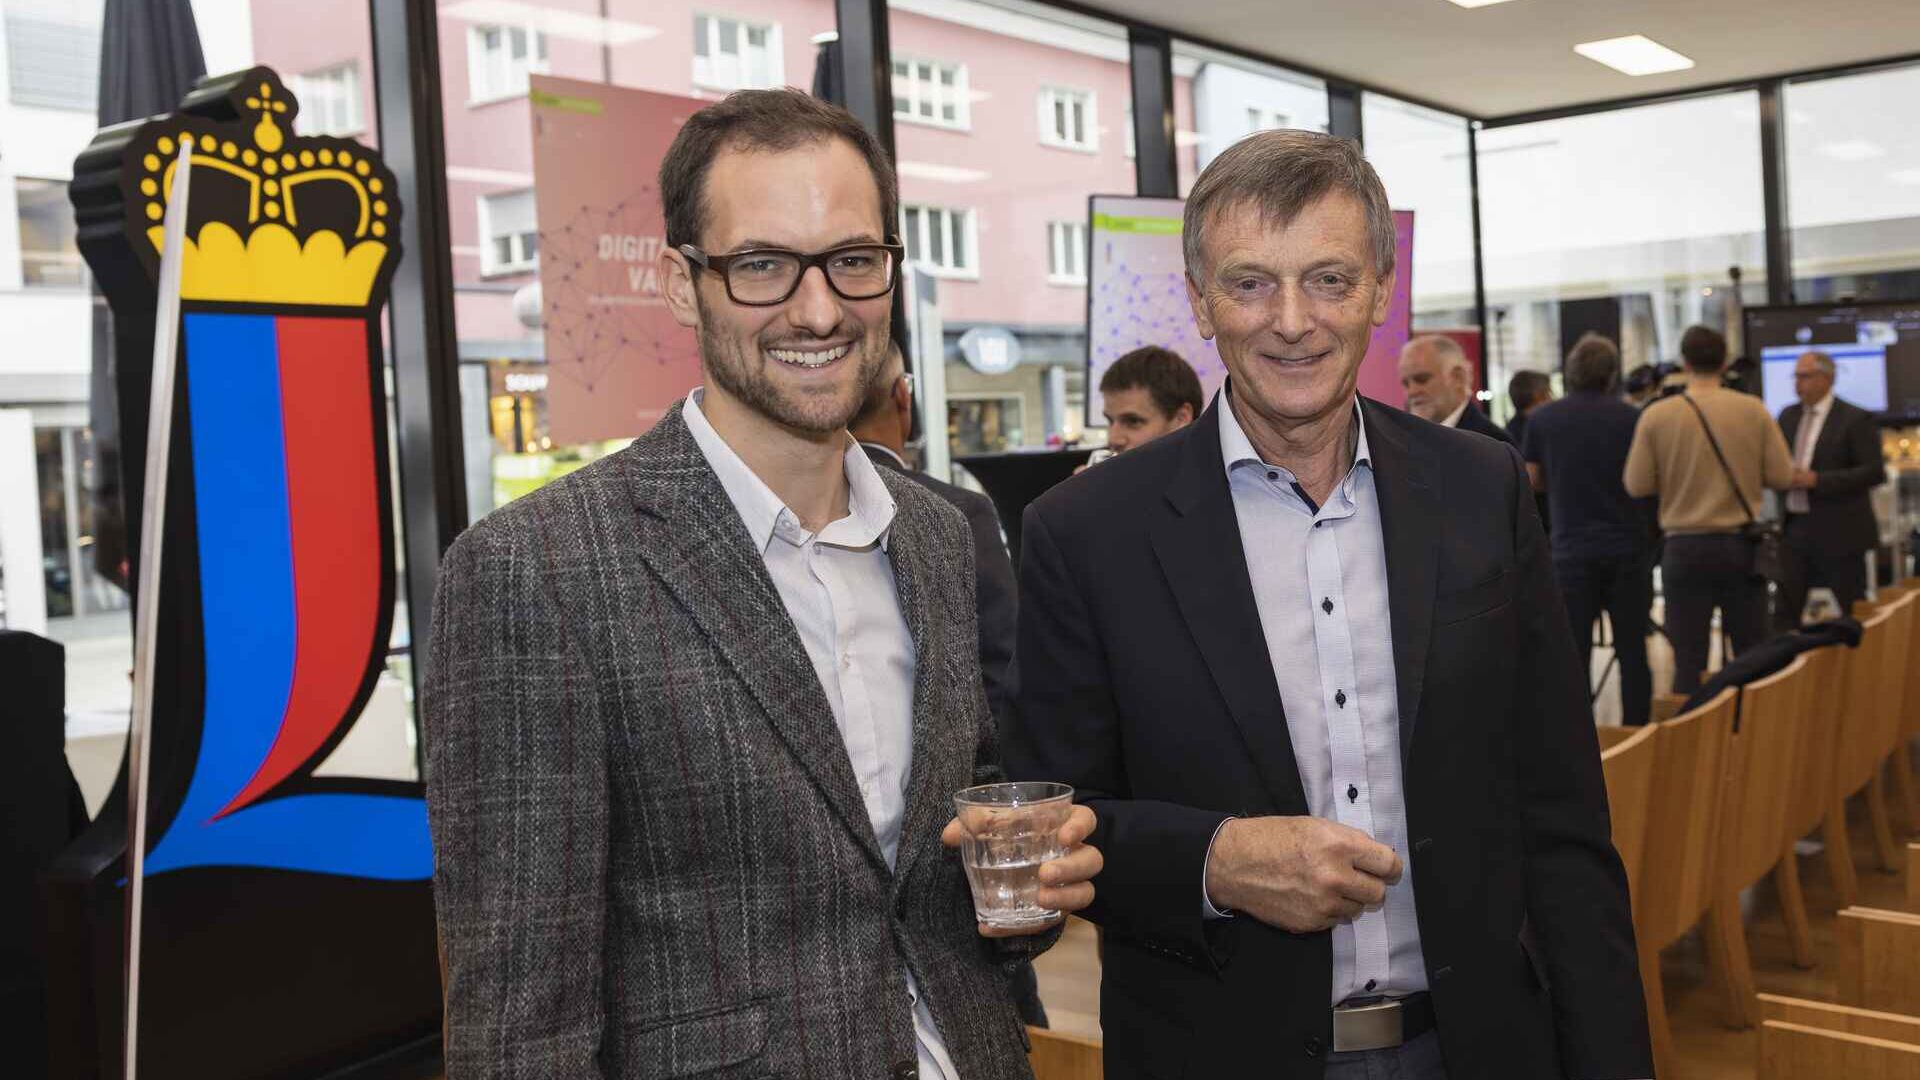 Το "Digitaltag Vaduz" υποδέχθηκε το Kunstmuseum της πρωτεύουσας του Πριγκιπάτου του Λιχτενστάιν το Σάββατο 15 Οκτωβρίου 2022